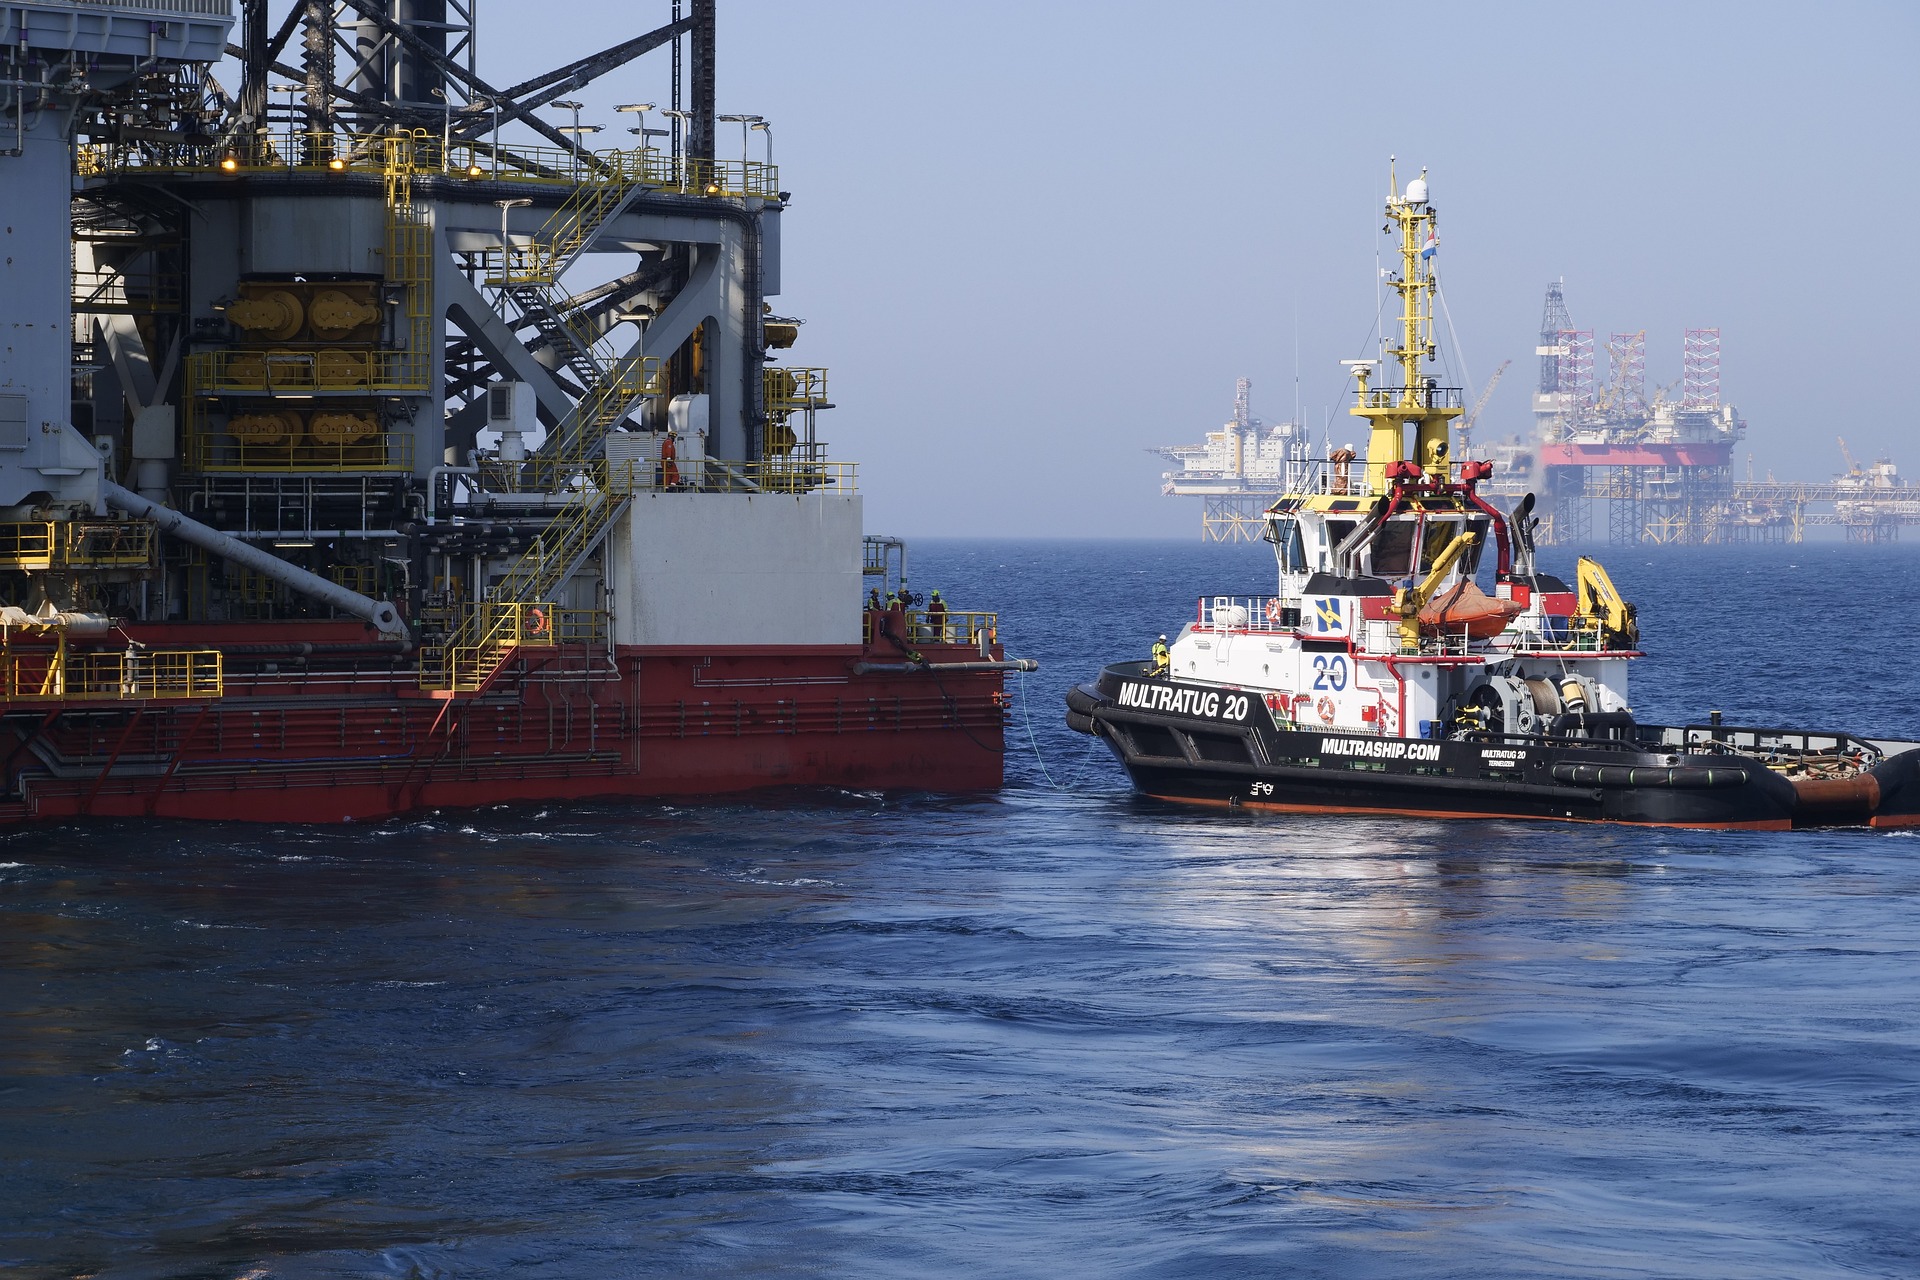 Trabalhar no exterior? Gigante do óleo e gás anuncia vagas offshore com contrato de 1 ano nos EUA, Canadá, Europa, Cingapura, Tailândia e outros países